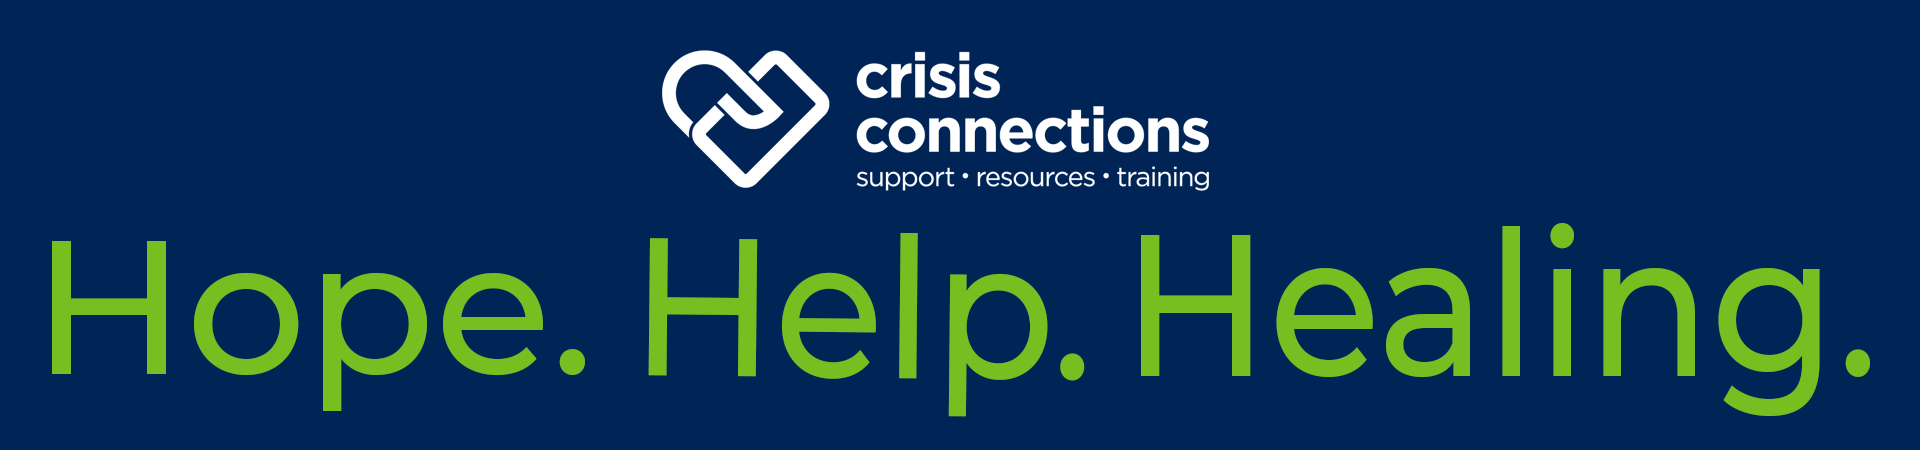 Hope Help Healing Header w CC Logo 1920x450